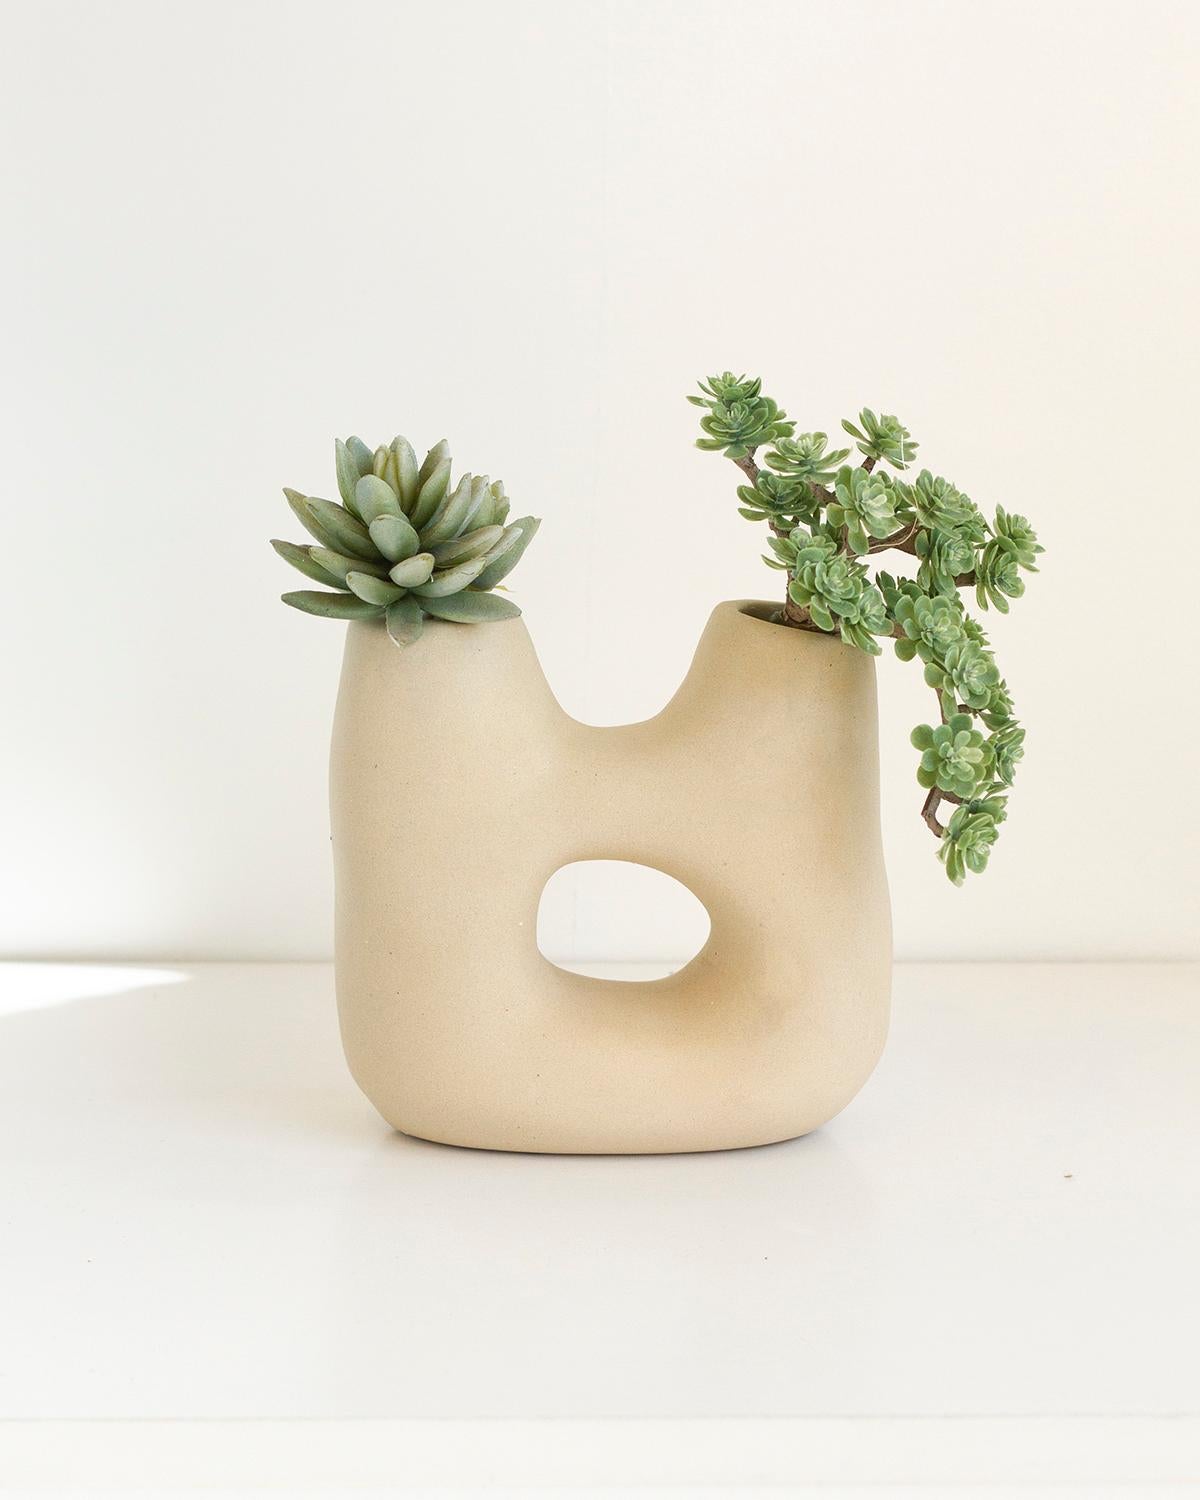 Diese moderne, organische Vase aus beigem Ton mit zwei Öffnungen ist das perfekte Weihnachtsgeschenk. Sie ist robust und elegant. Sein stiller Luxus ist perfekt für ein minimalistisches Zuhause. Mit Sorgfalt handgefertigt, strahlt er Eleganz